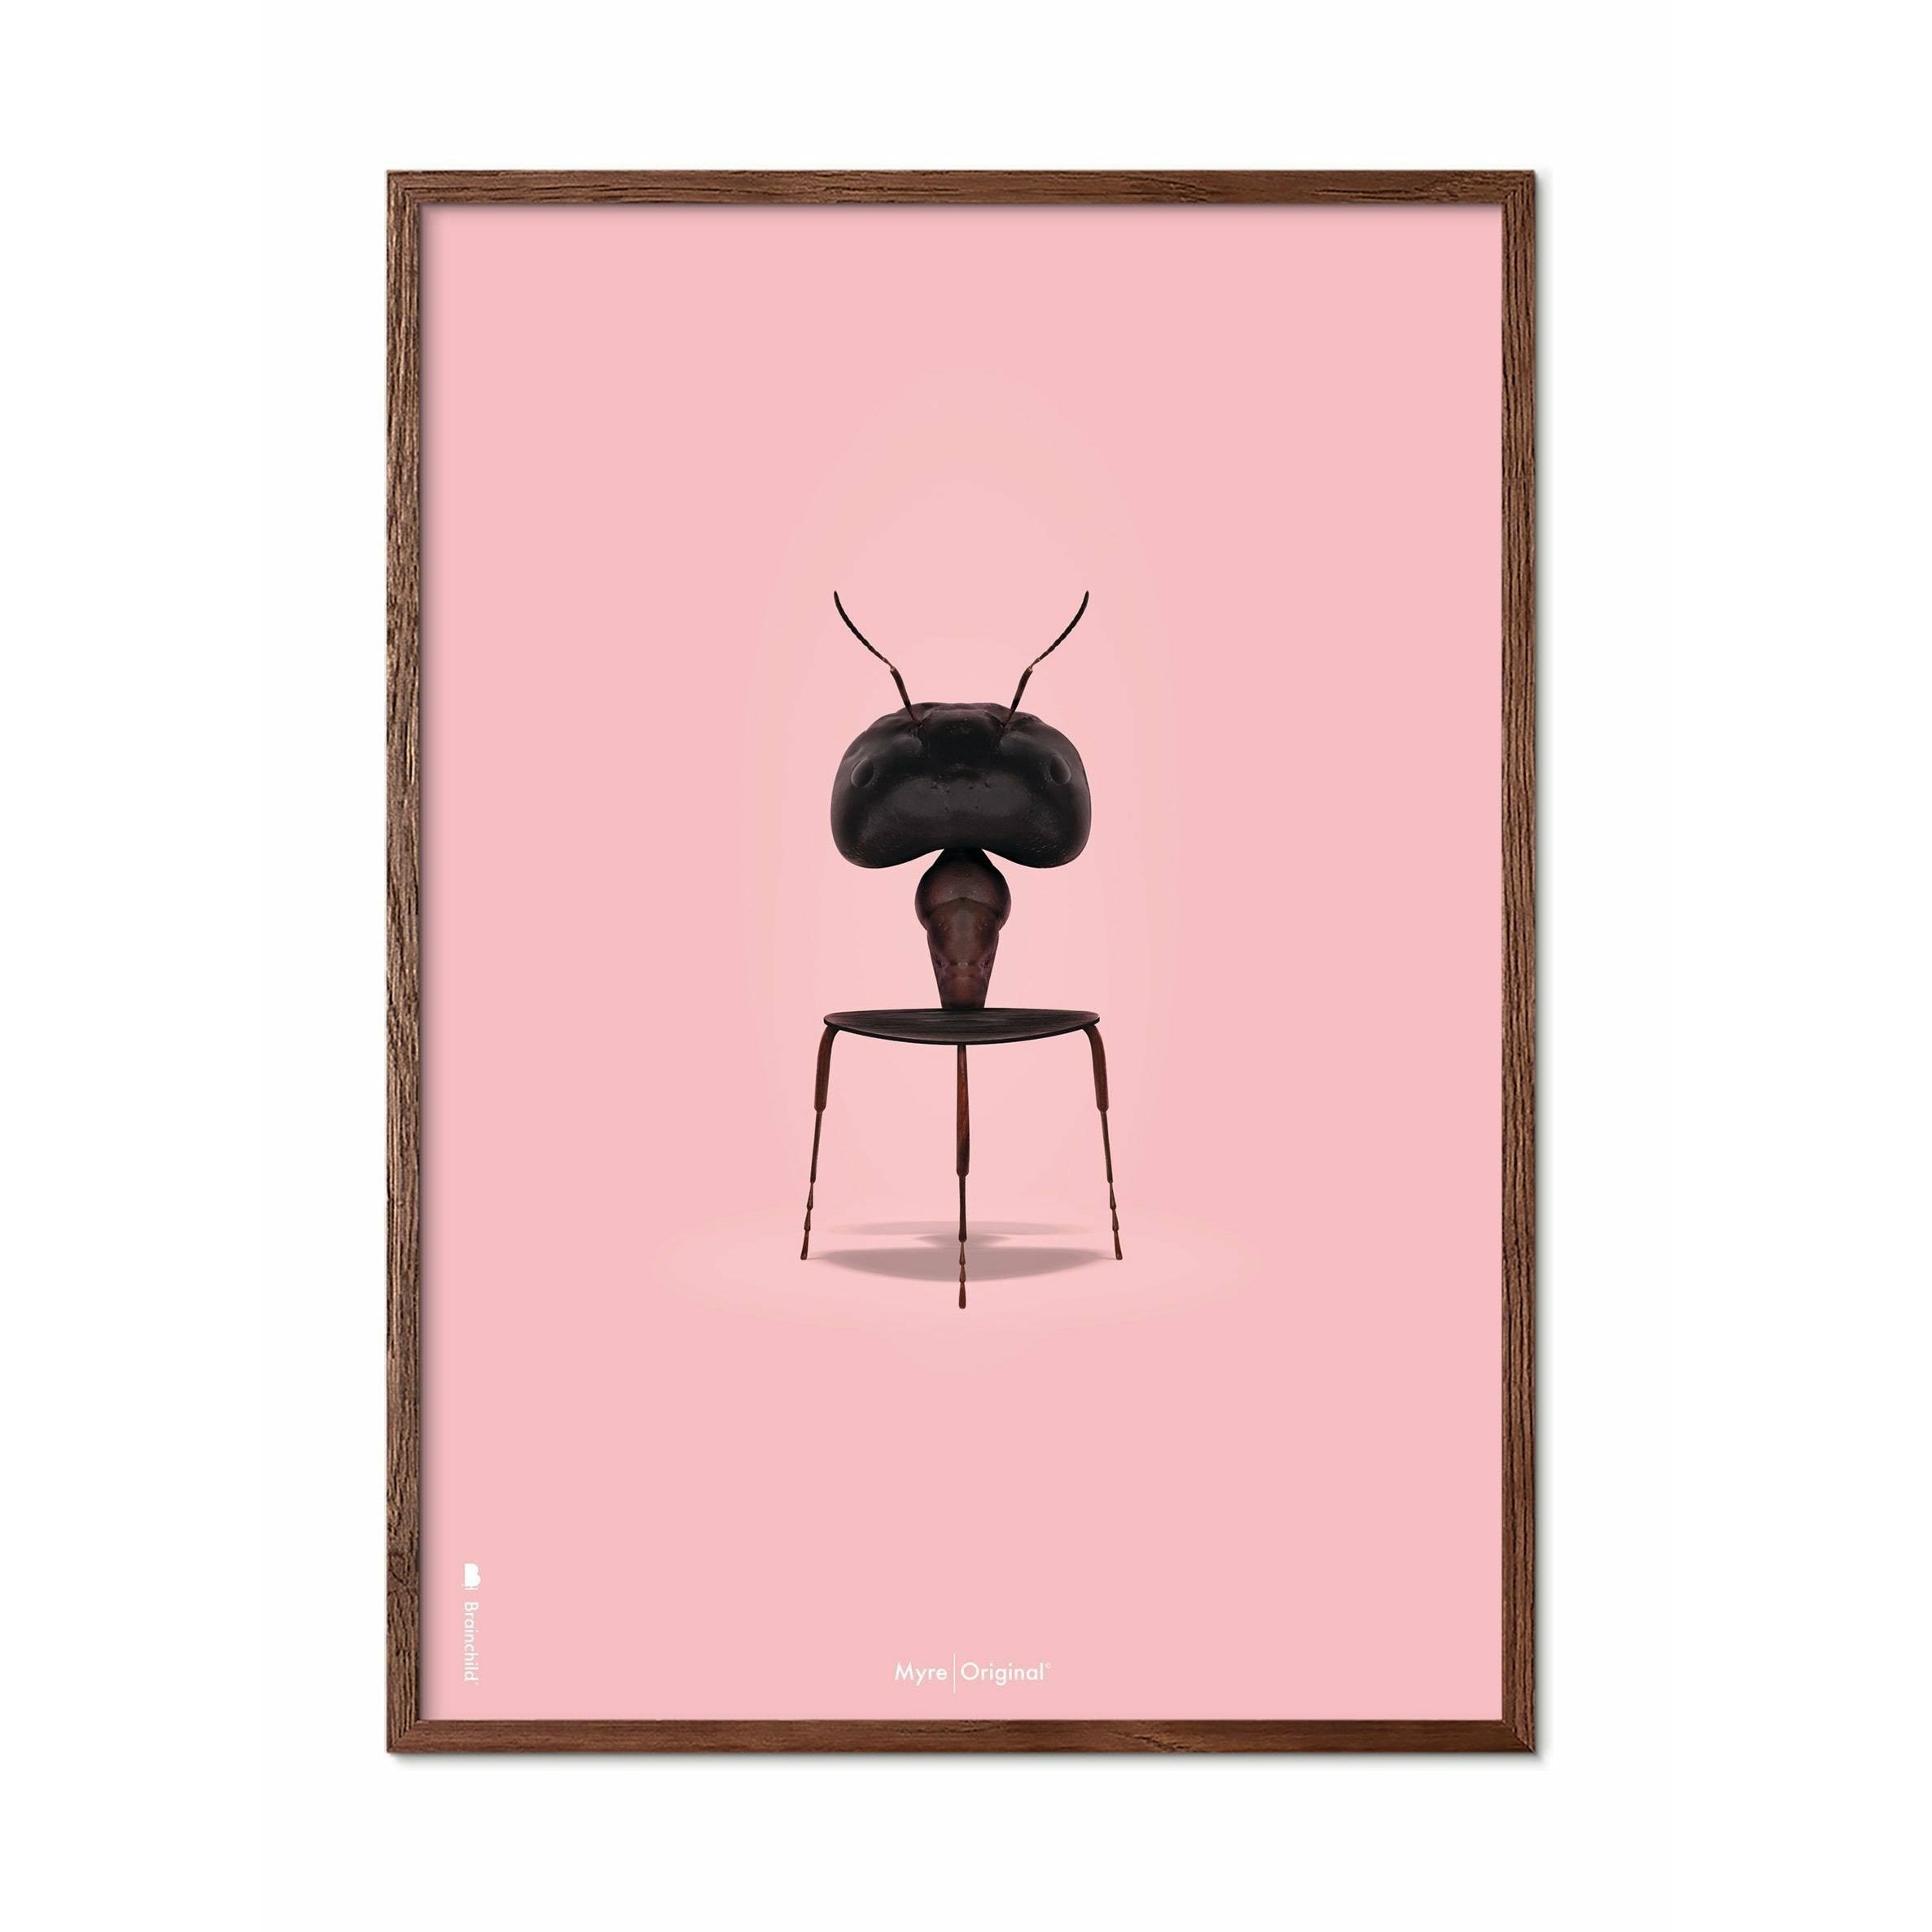 Póster clásico de hormigas de creación, marco de madera oscura 70x100 cm, fondo rosa